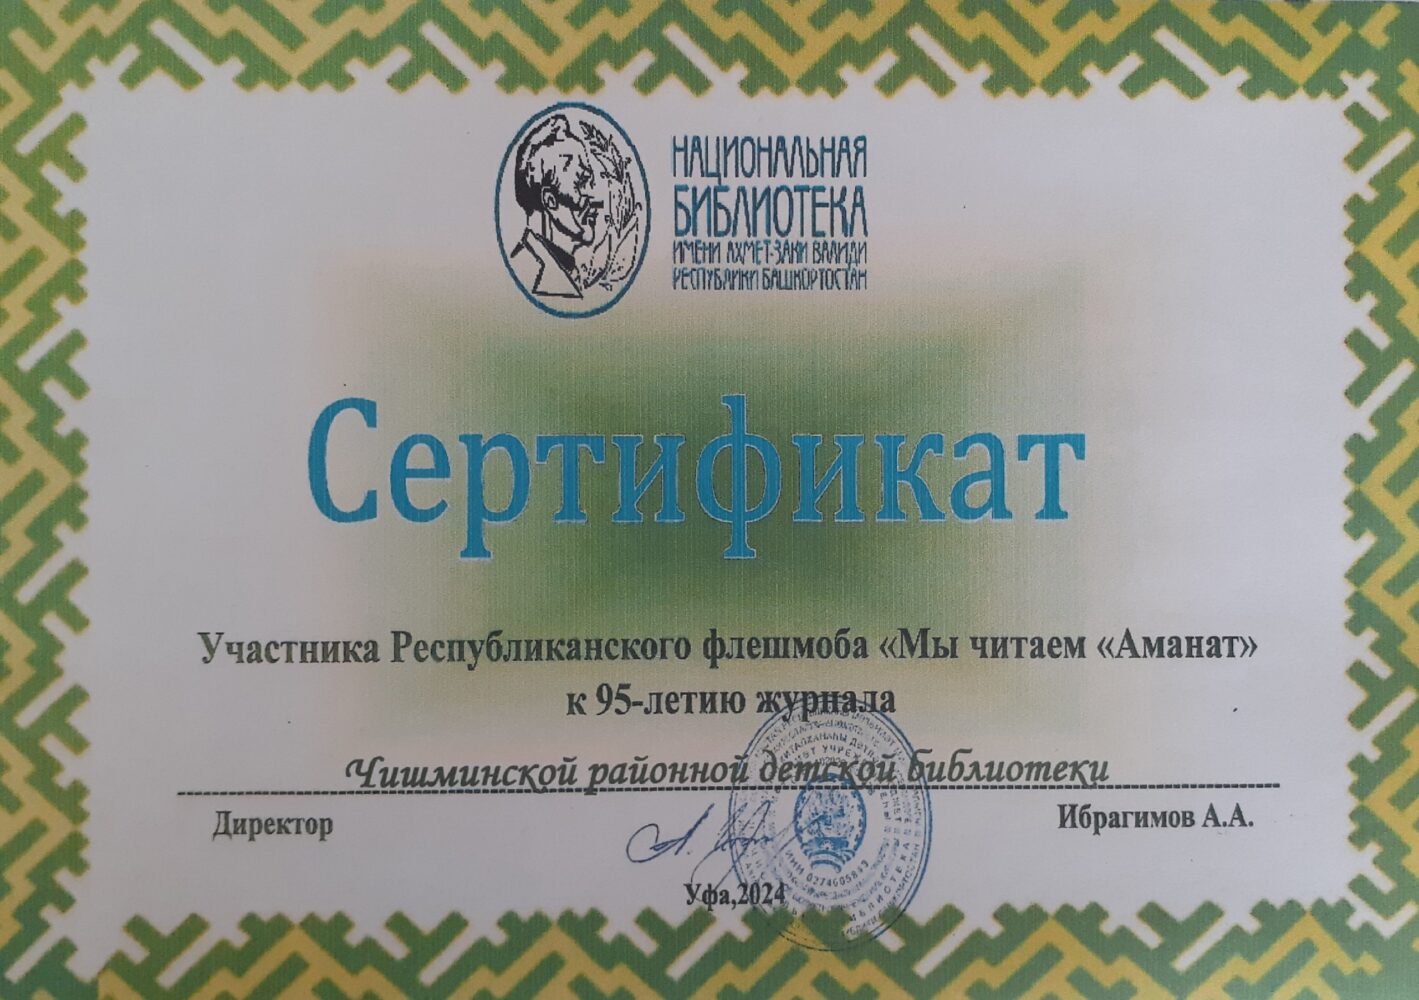 Сертификат участника Республиканского флешмоба «Мы читаем «Аманат»